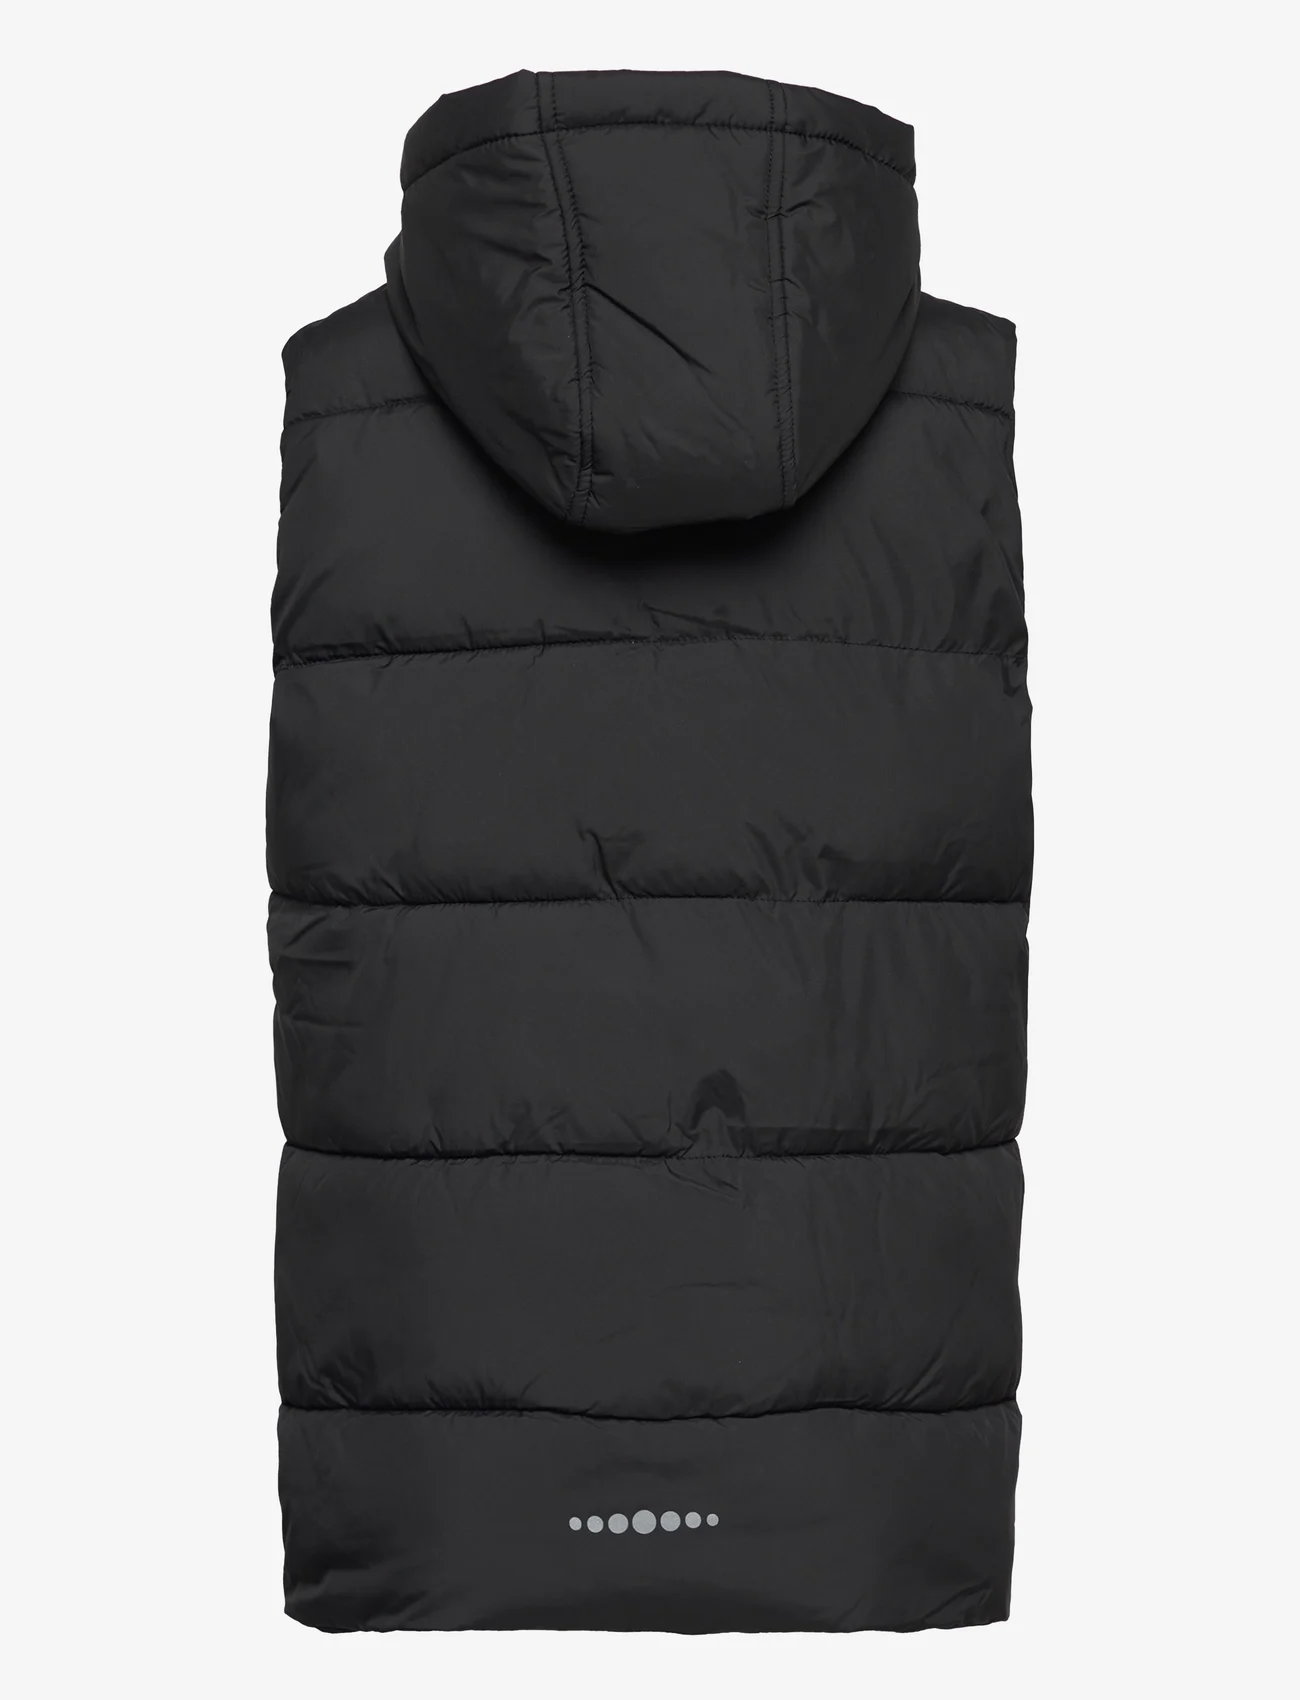 Tom Tailor - Hooded quilted vest - kinderen - black - 1